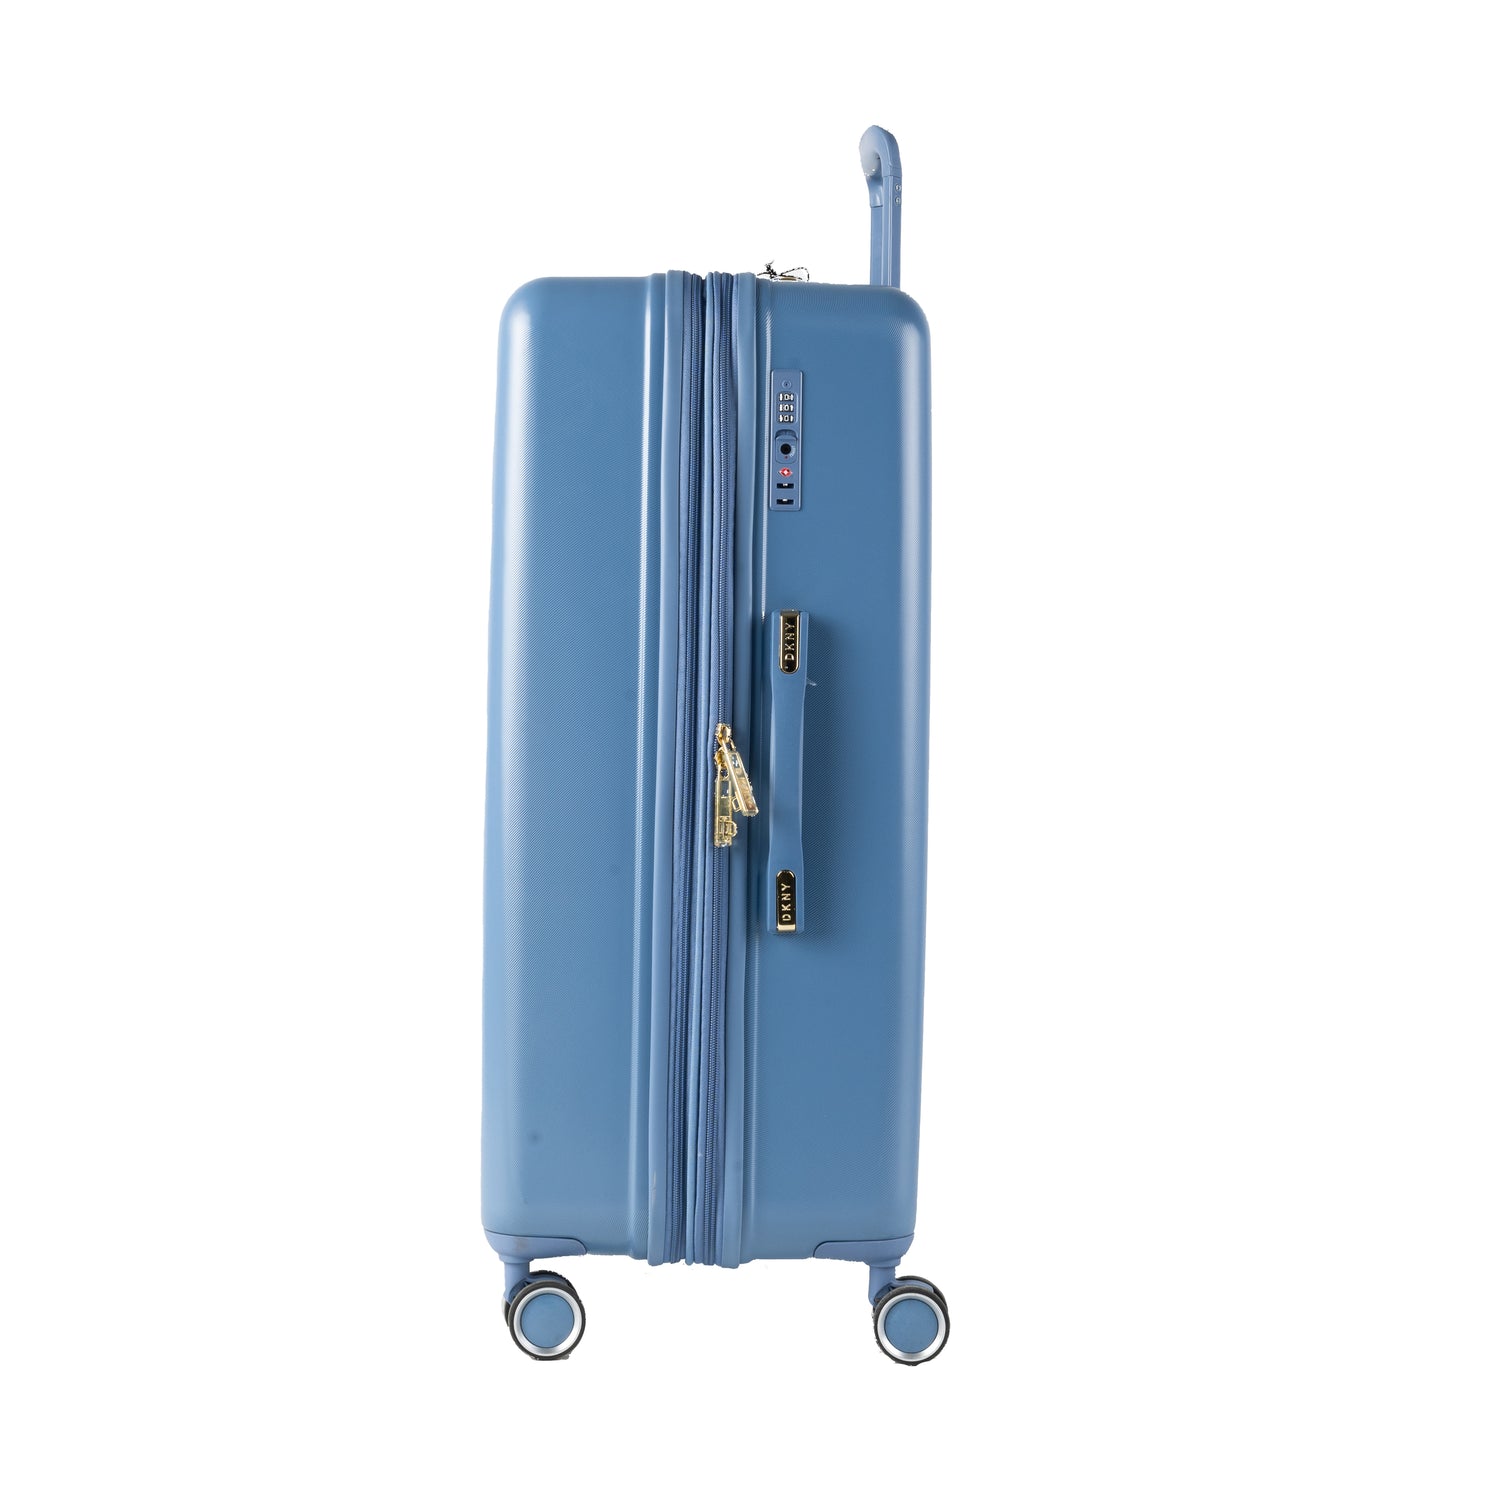 DKNY Blue Large Luggage